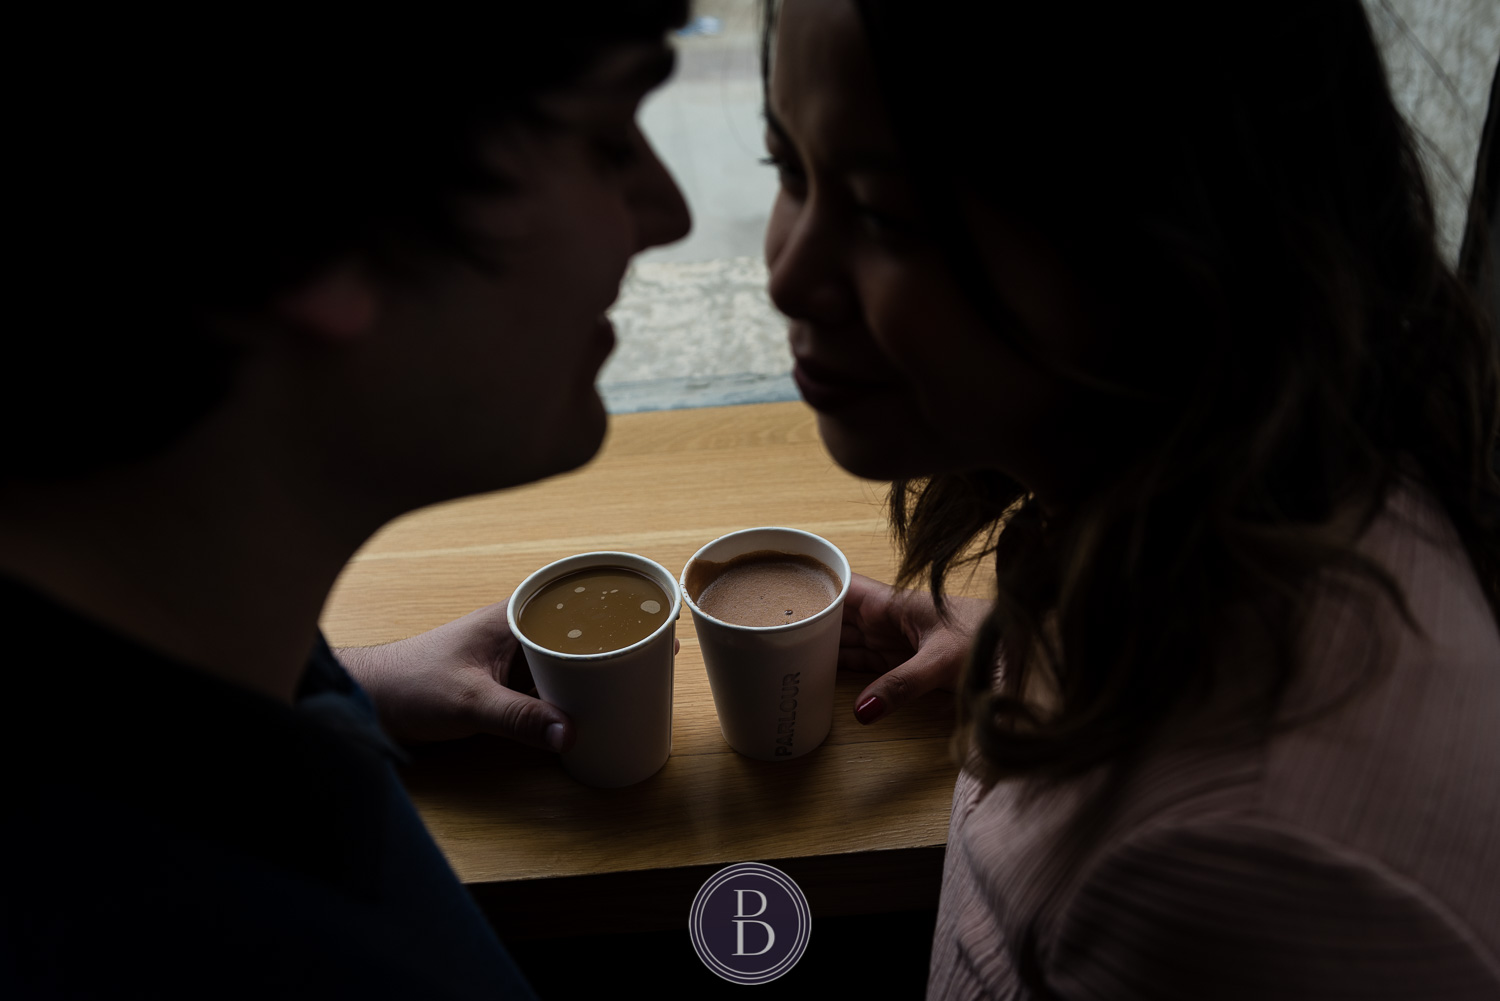 hot chocolate enjoyed by engaged couple